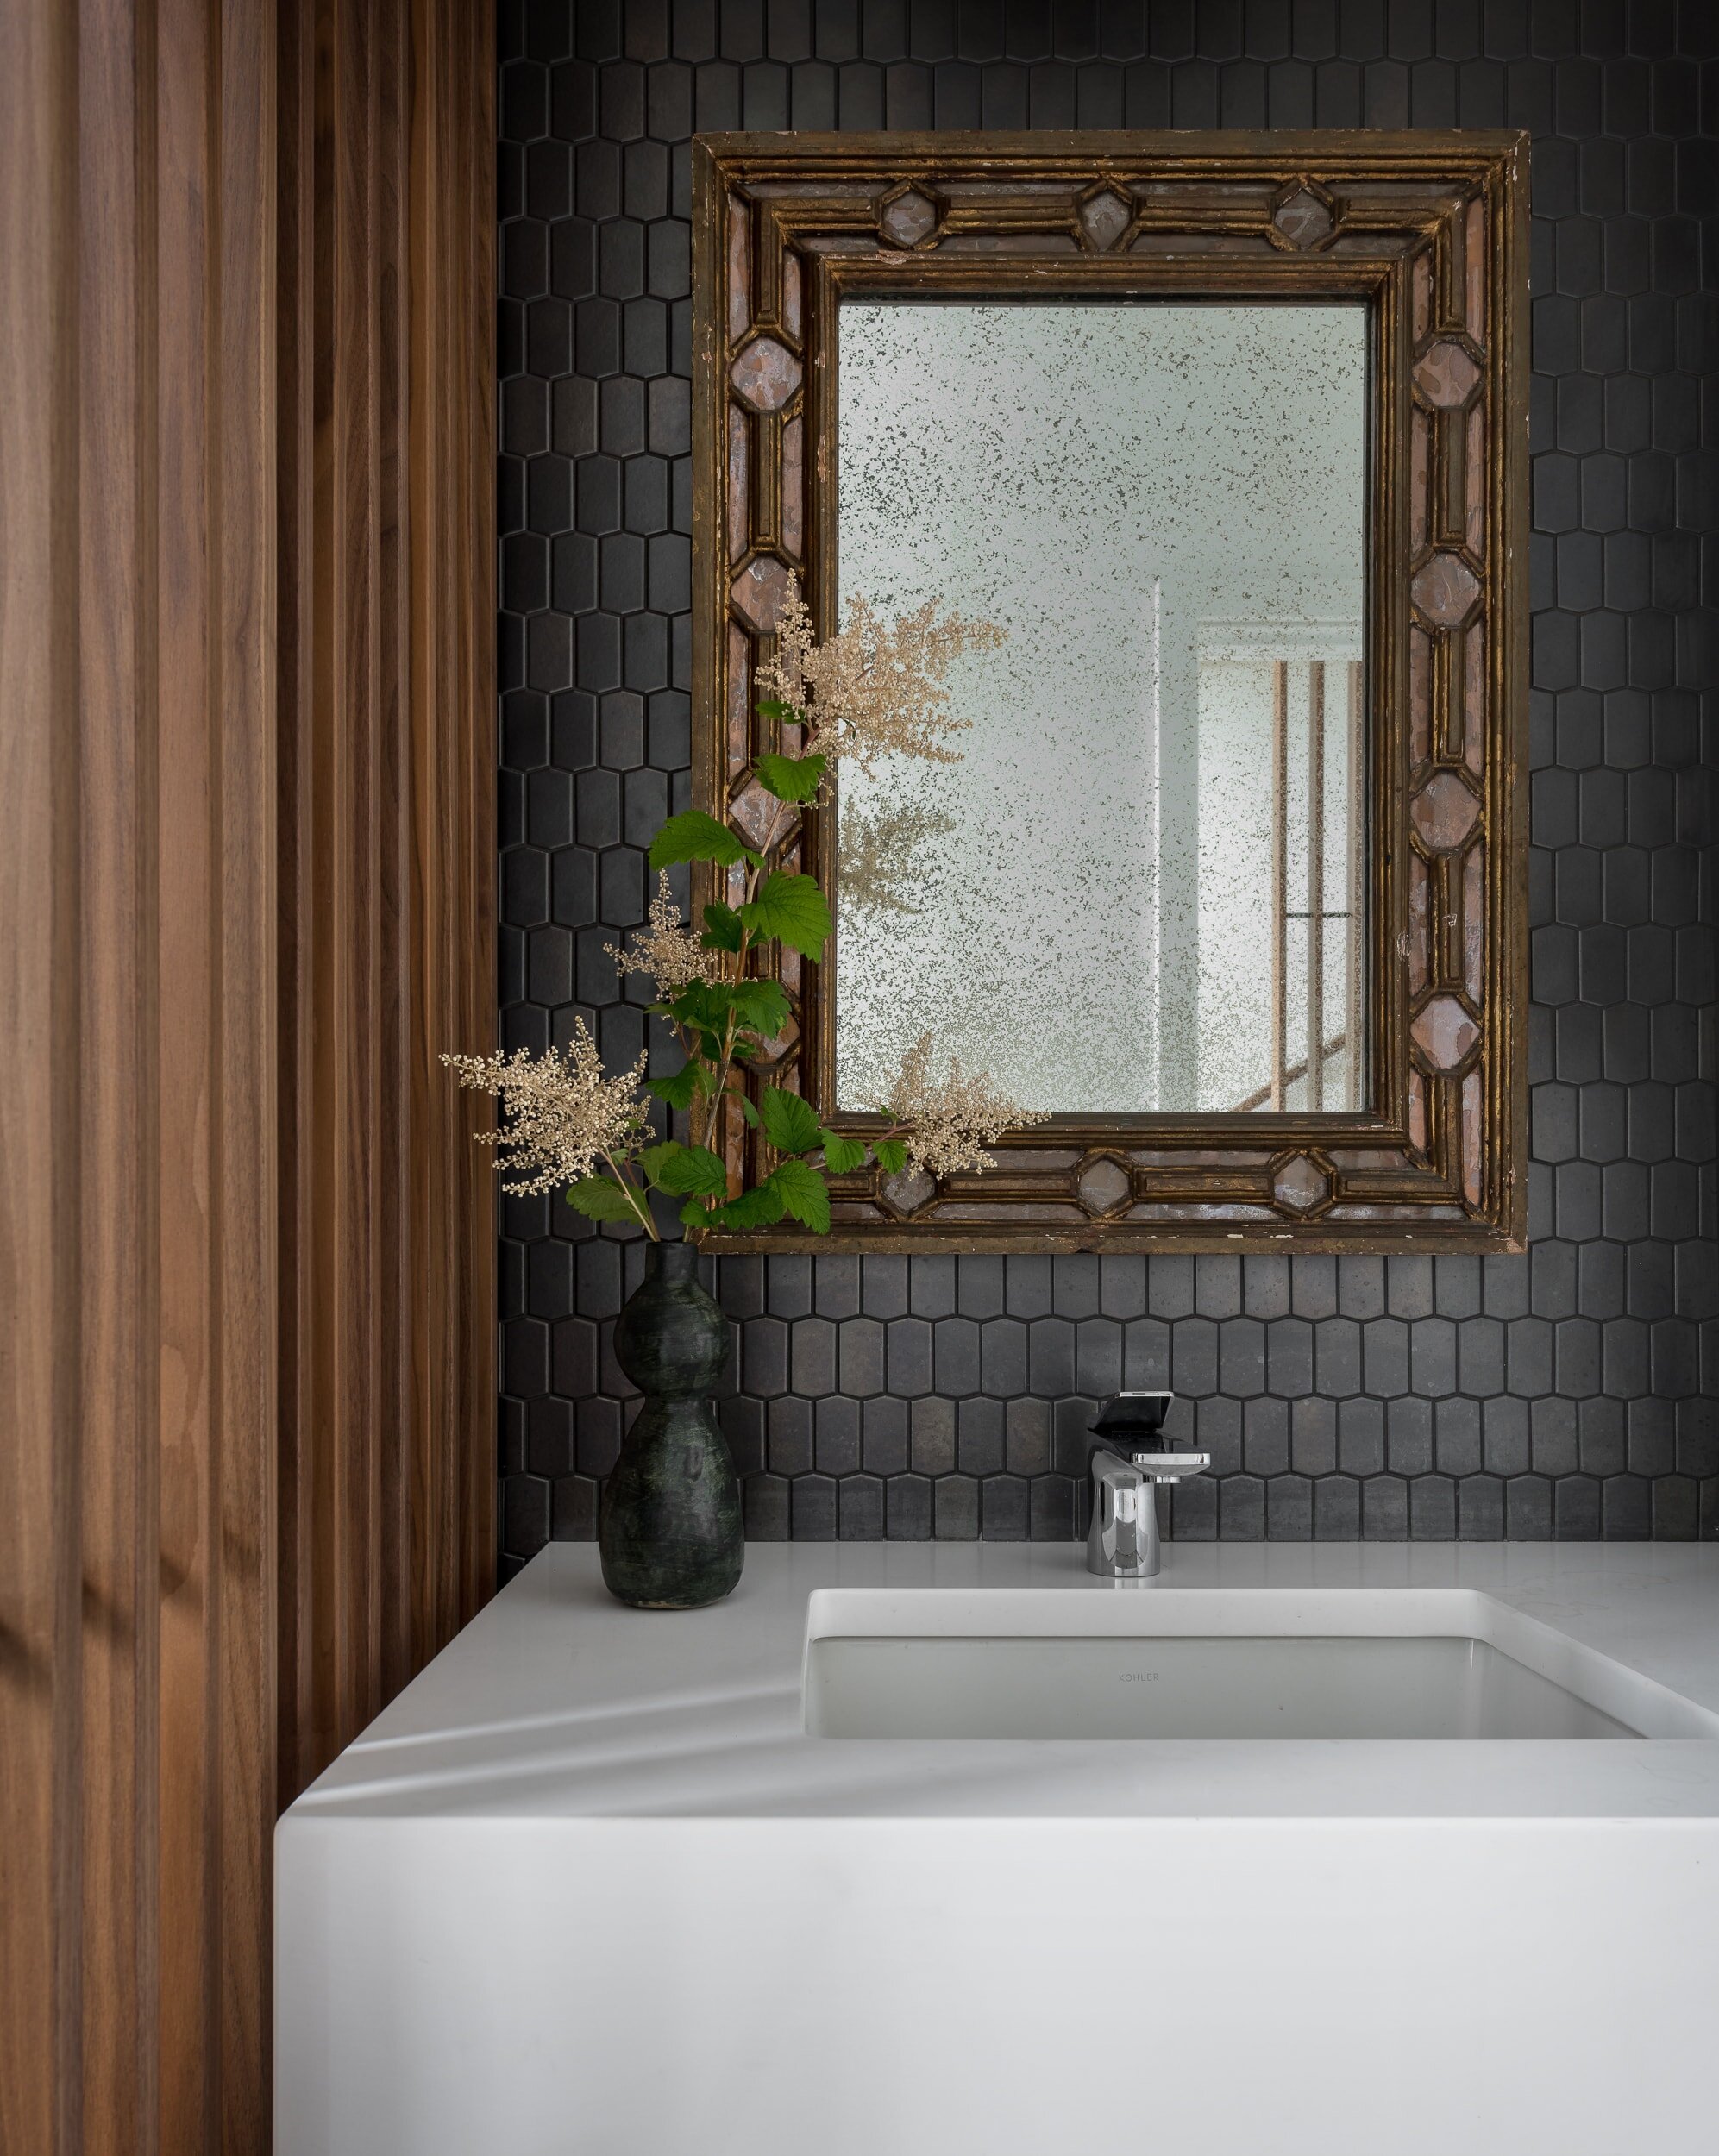 designer bathroom tile backsplash with artistic mirror